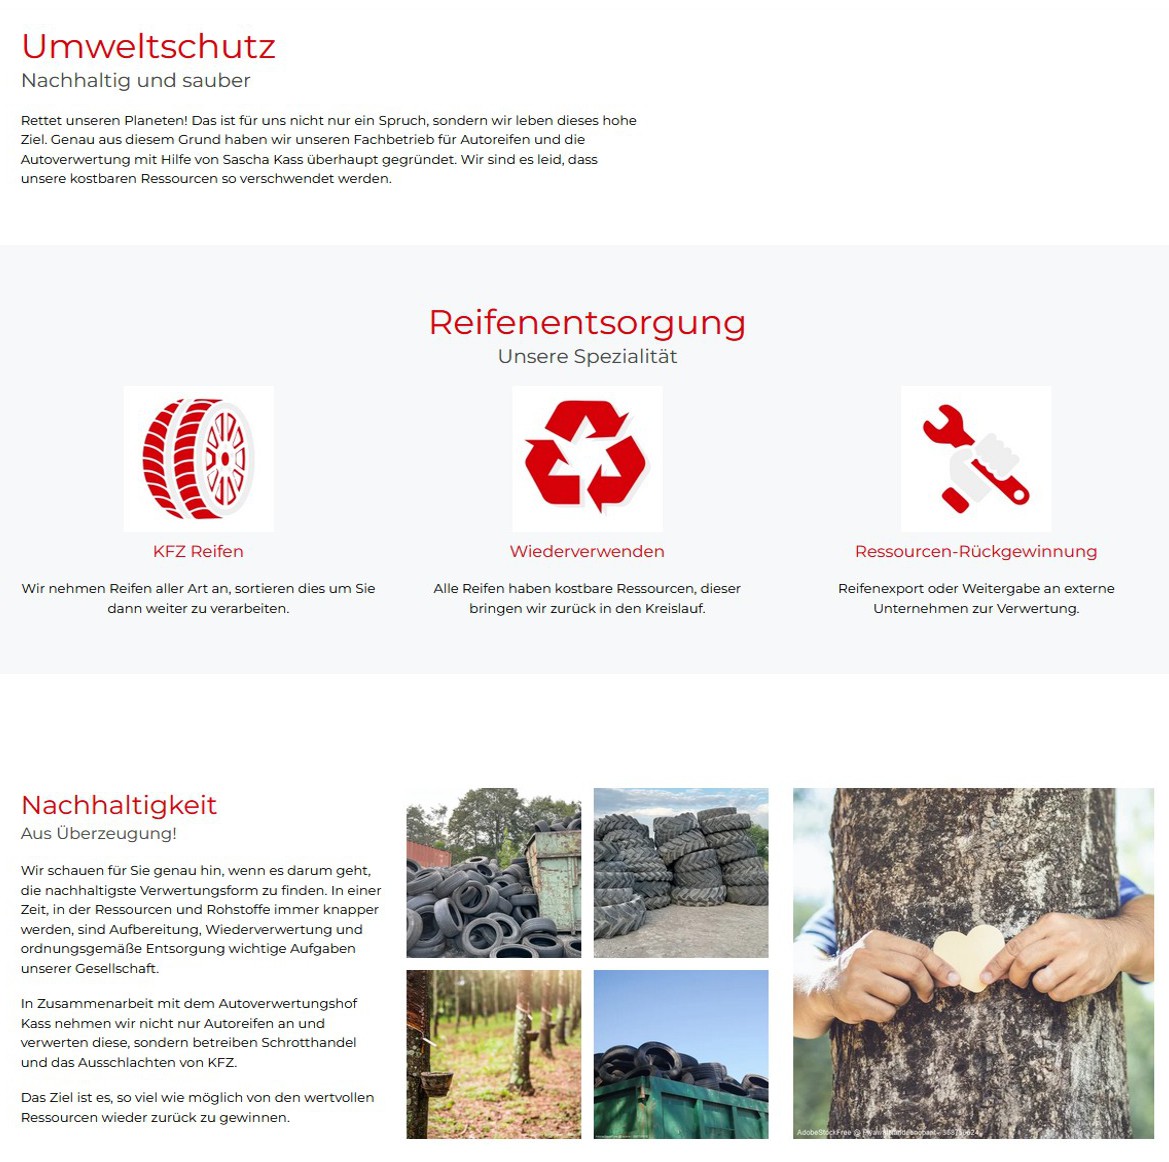 webdesign uelzen deutschland joomla cms designer erstellung programmierung wsmu projekt bild 6